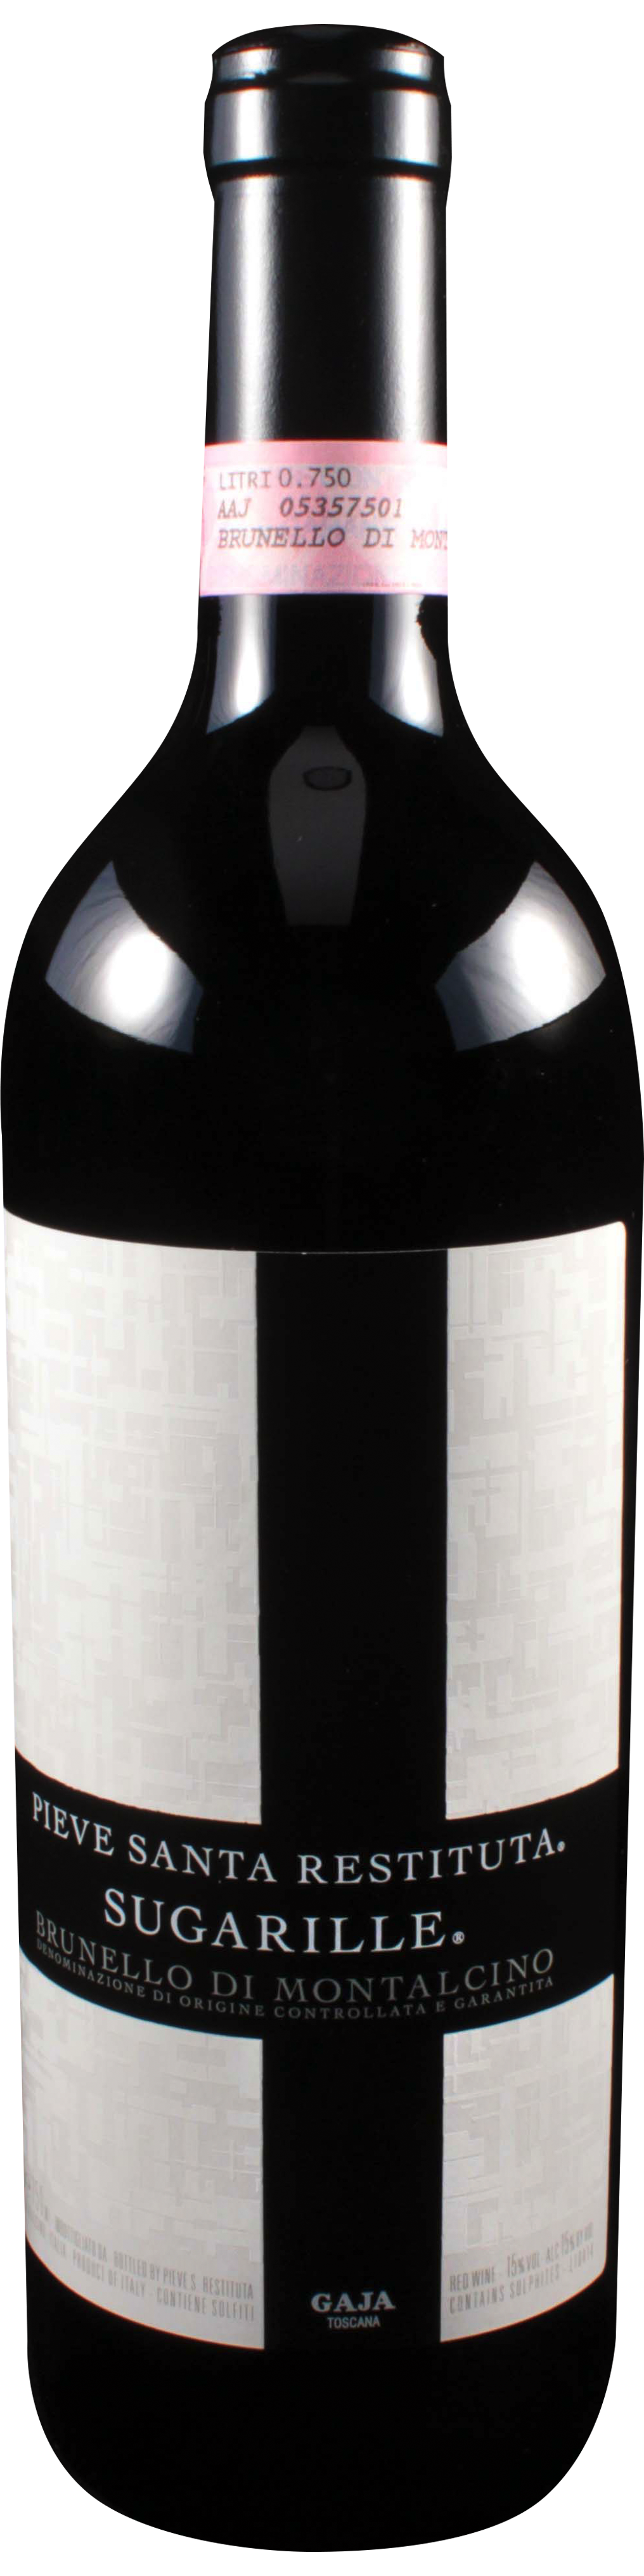 Bottle shot of 2006 Brunello di Montalcino Sugarille